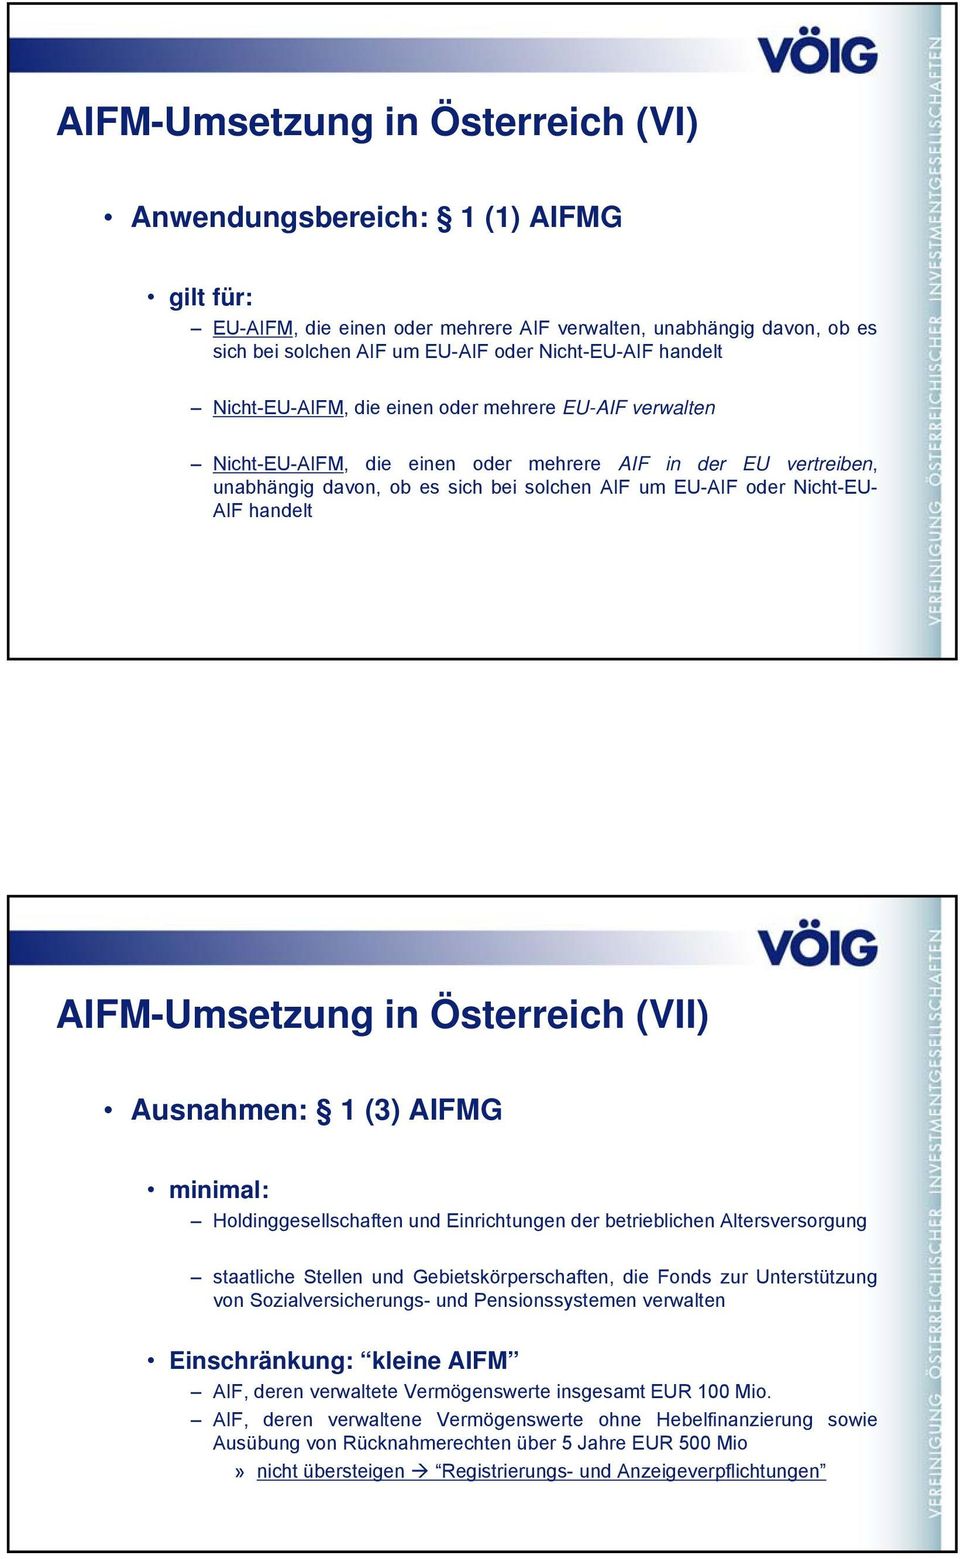 AIF handelt AIFM-Umsetzung in Österreich (VII) Ausnahmen: 1 (3) AIFMG minimal: Holdinggesellschaften und Einrichtungen der betrieblichen Altersversorgung staatliche Stellen und Gebietskörperschaften,